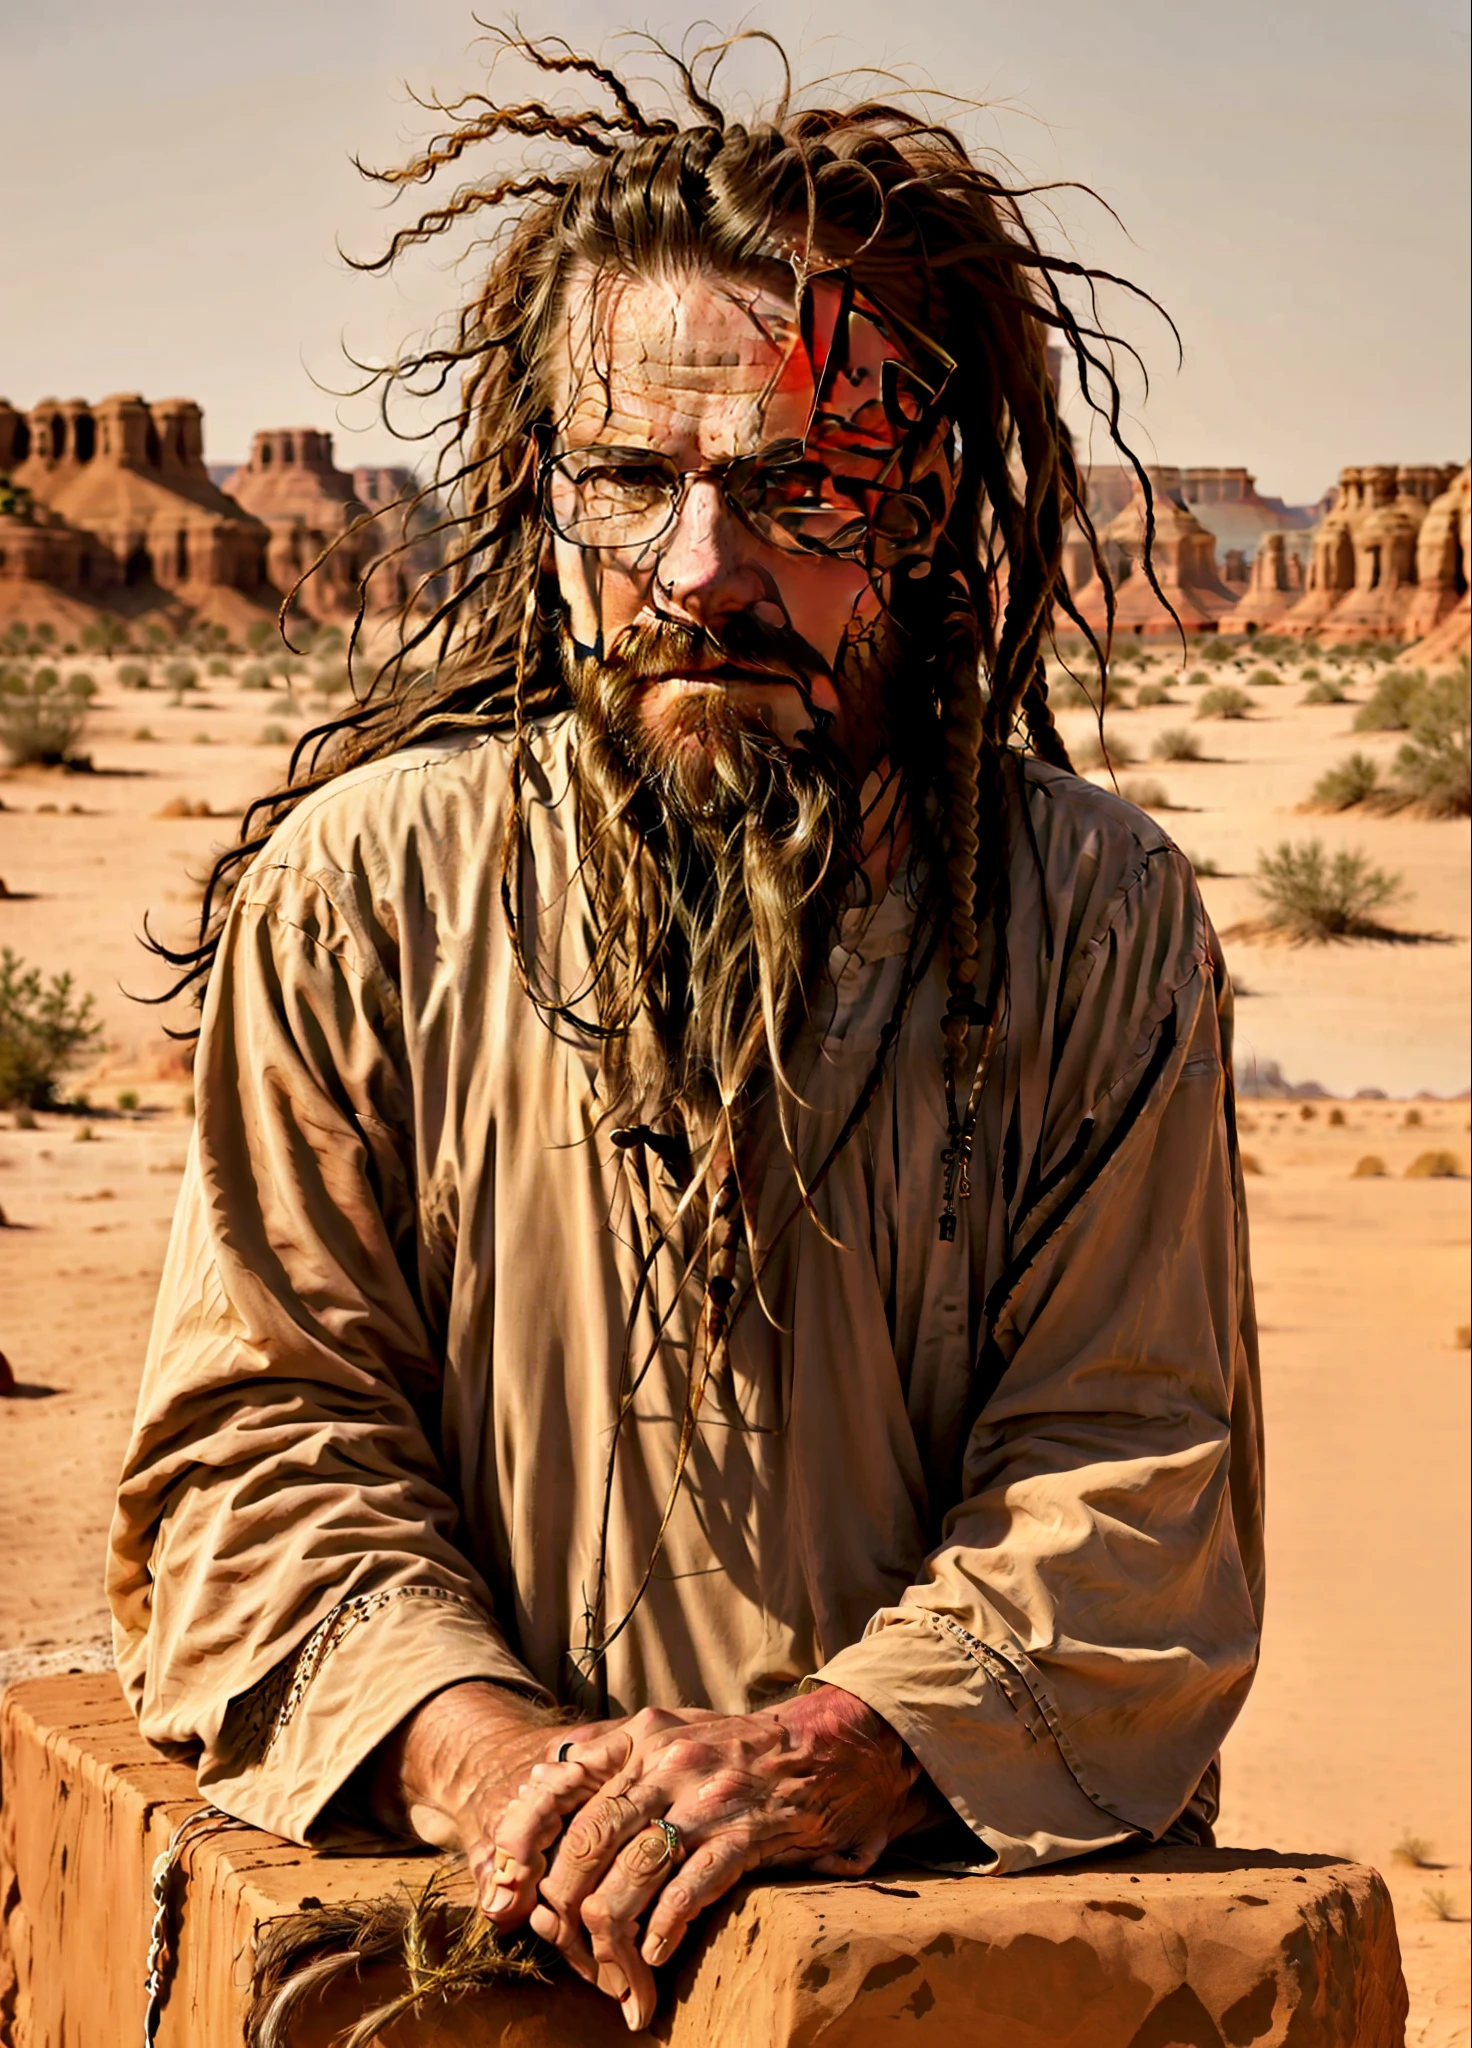 砂漠の岩の上に座っている長髪とひげのトム・クルーズの男性, 長いあごひげ, 非常に長い白いひげと髪, 非常に長い髪, ポートレートショット, 長いドレッドヘア, 砂漠の遊牧民, オッツィ, ドレッド, 長いヤギひげ, 長い茶色のひげ, ドレッドヘアの泥, マーティン・ショーラーに触発されて, 触手ひげ, ステファン・ゲゼル